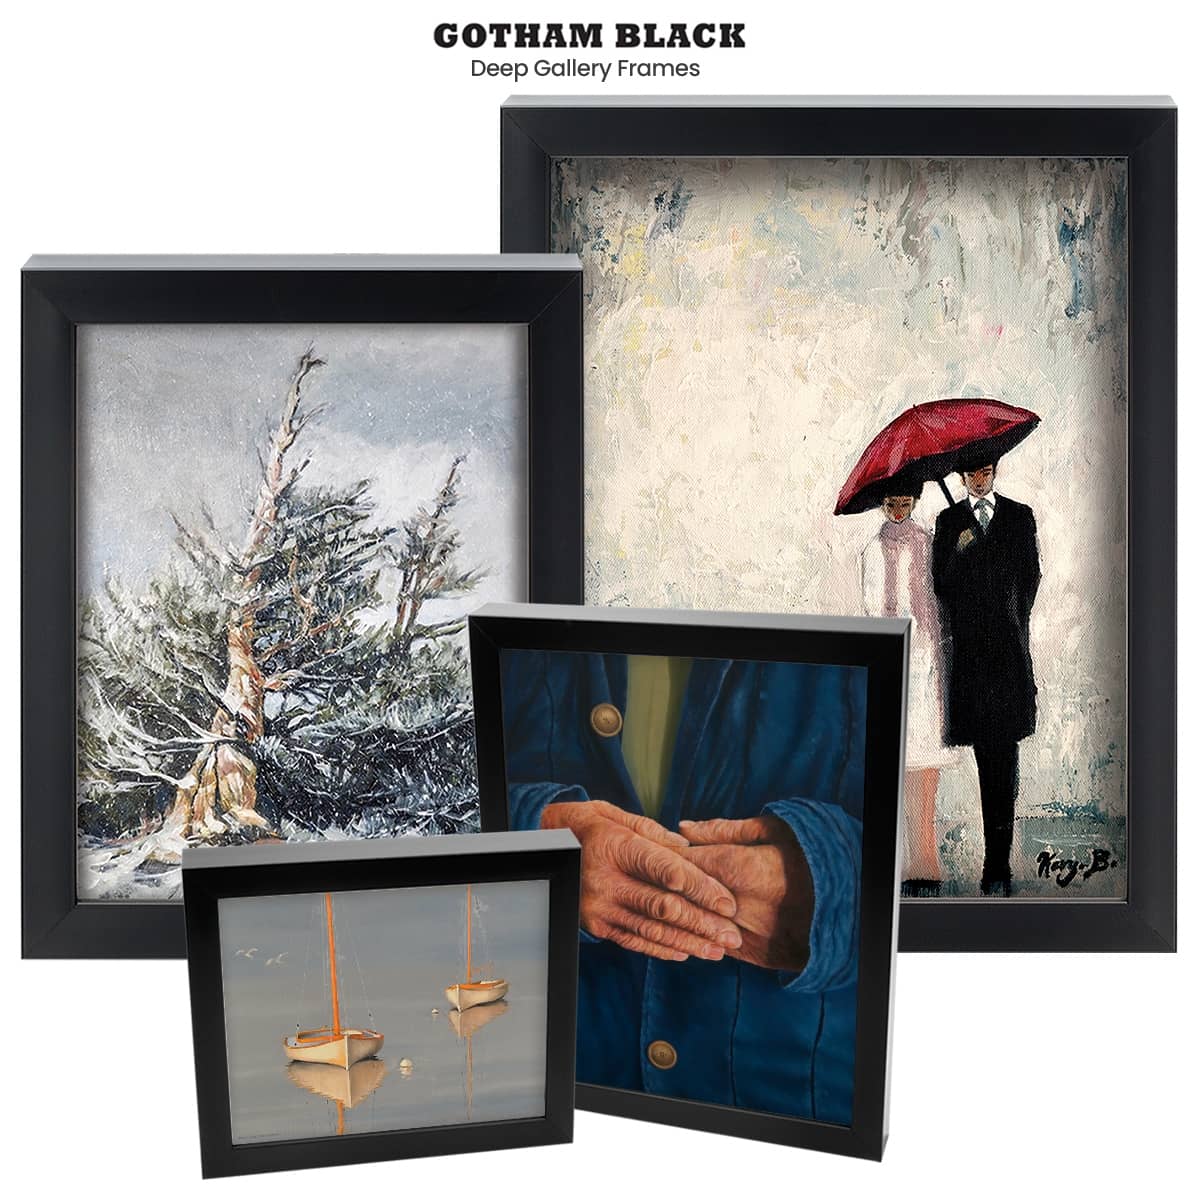 Gotham Black Deep Gallery Frames